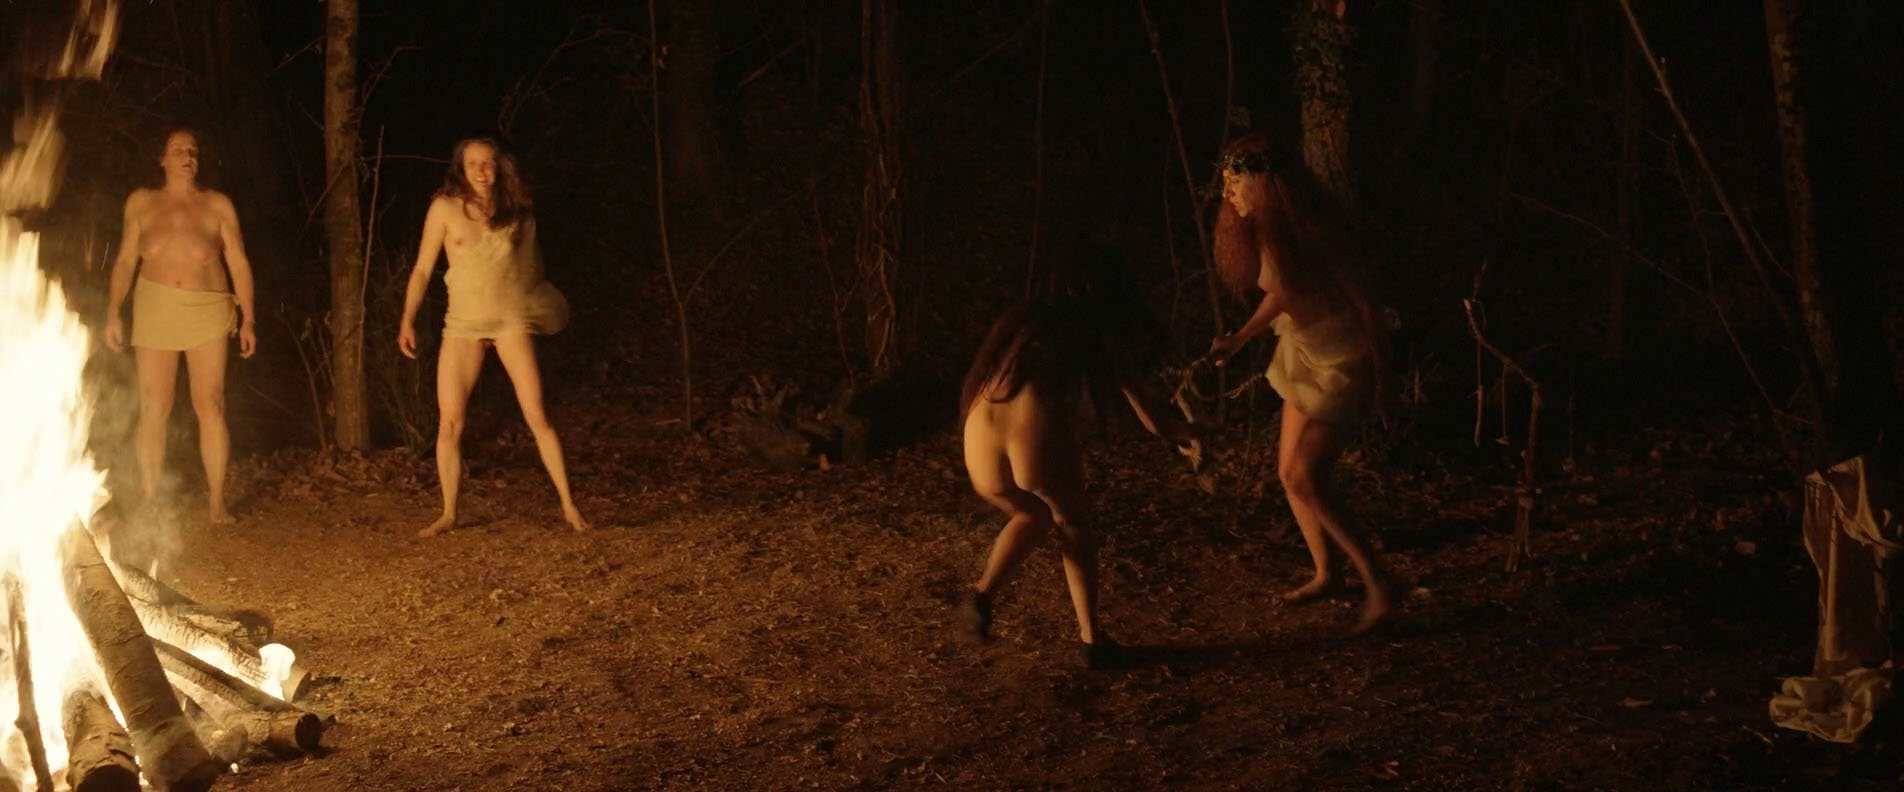 Aubrey Plaza nude, Jemima Kirke nude, Kate Micucci nude - The Little Hours (2017)